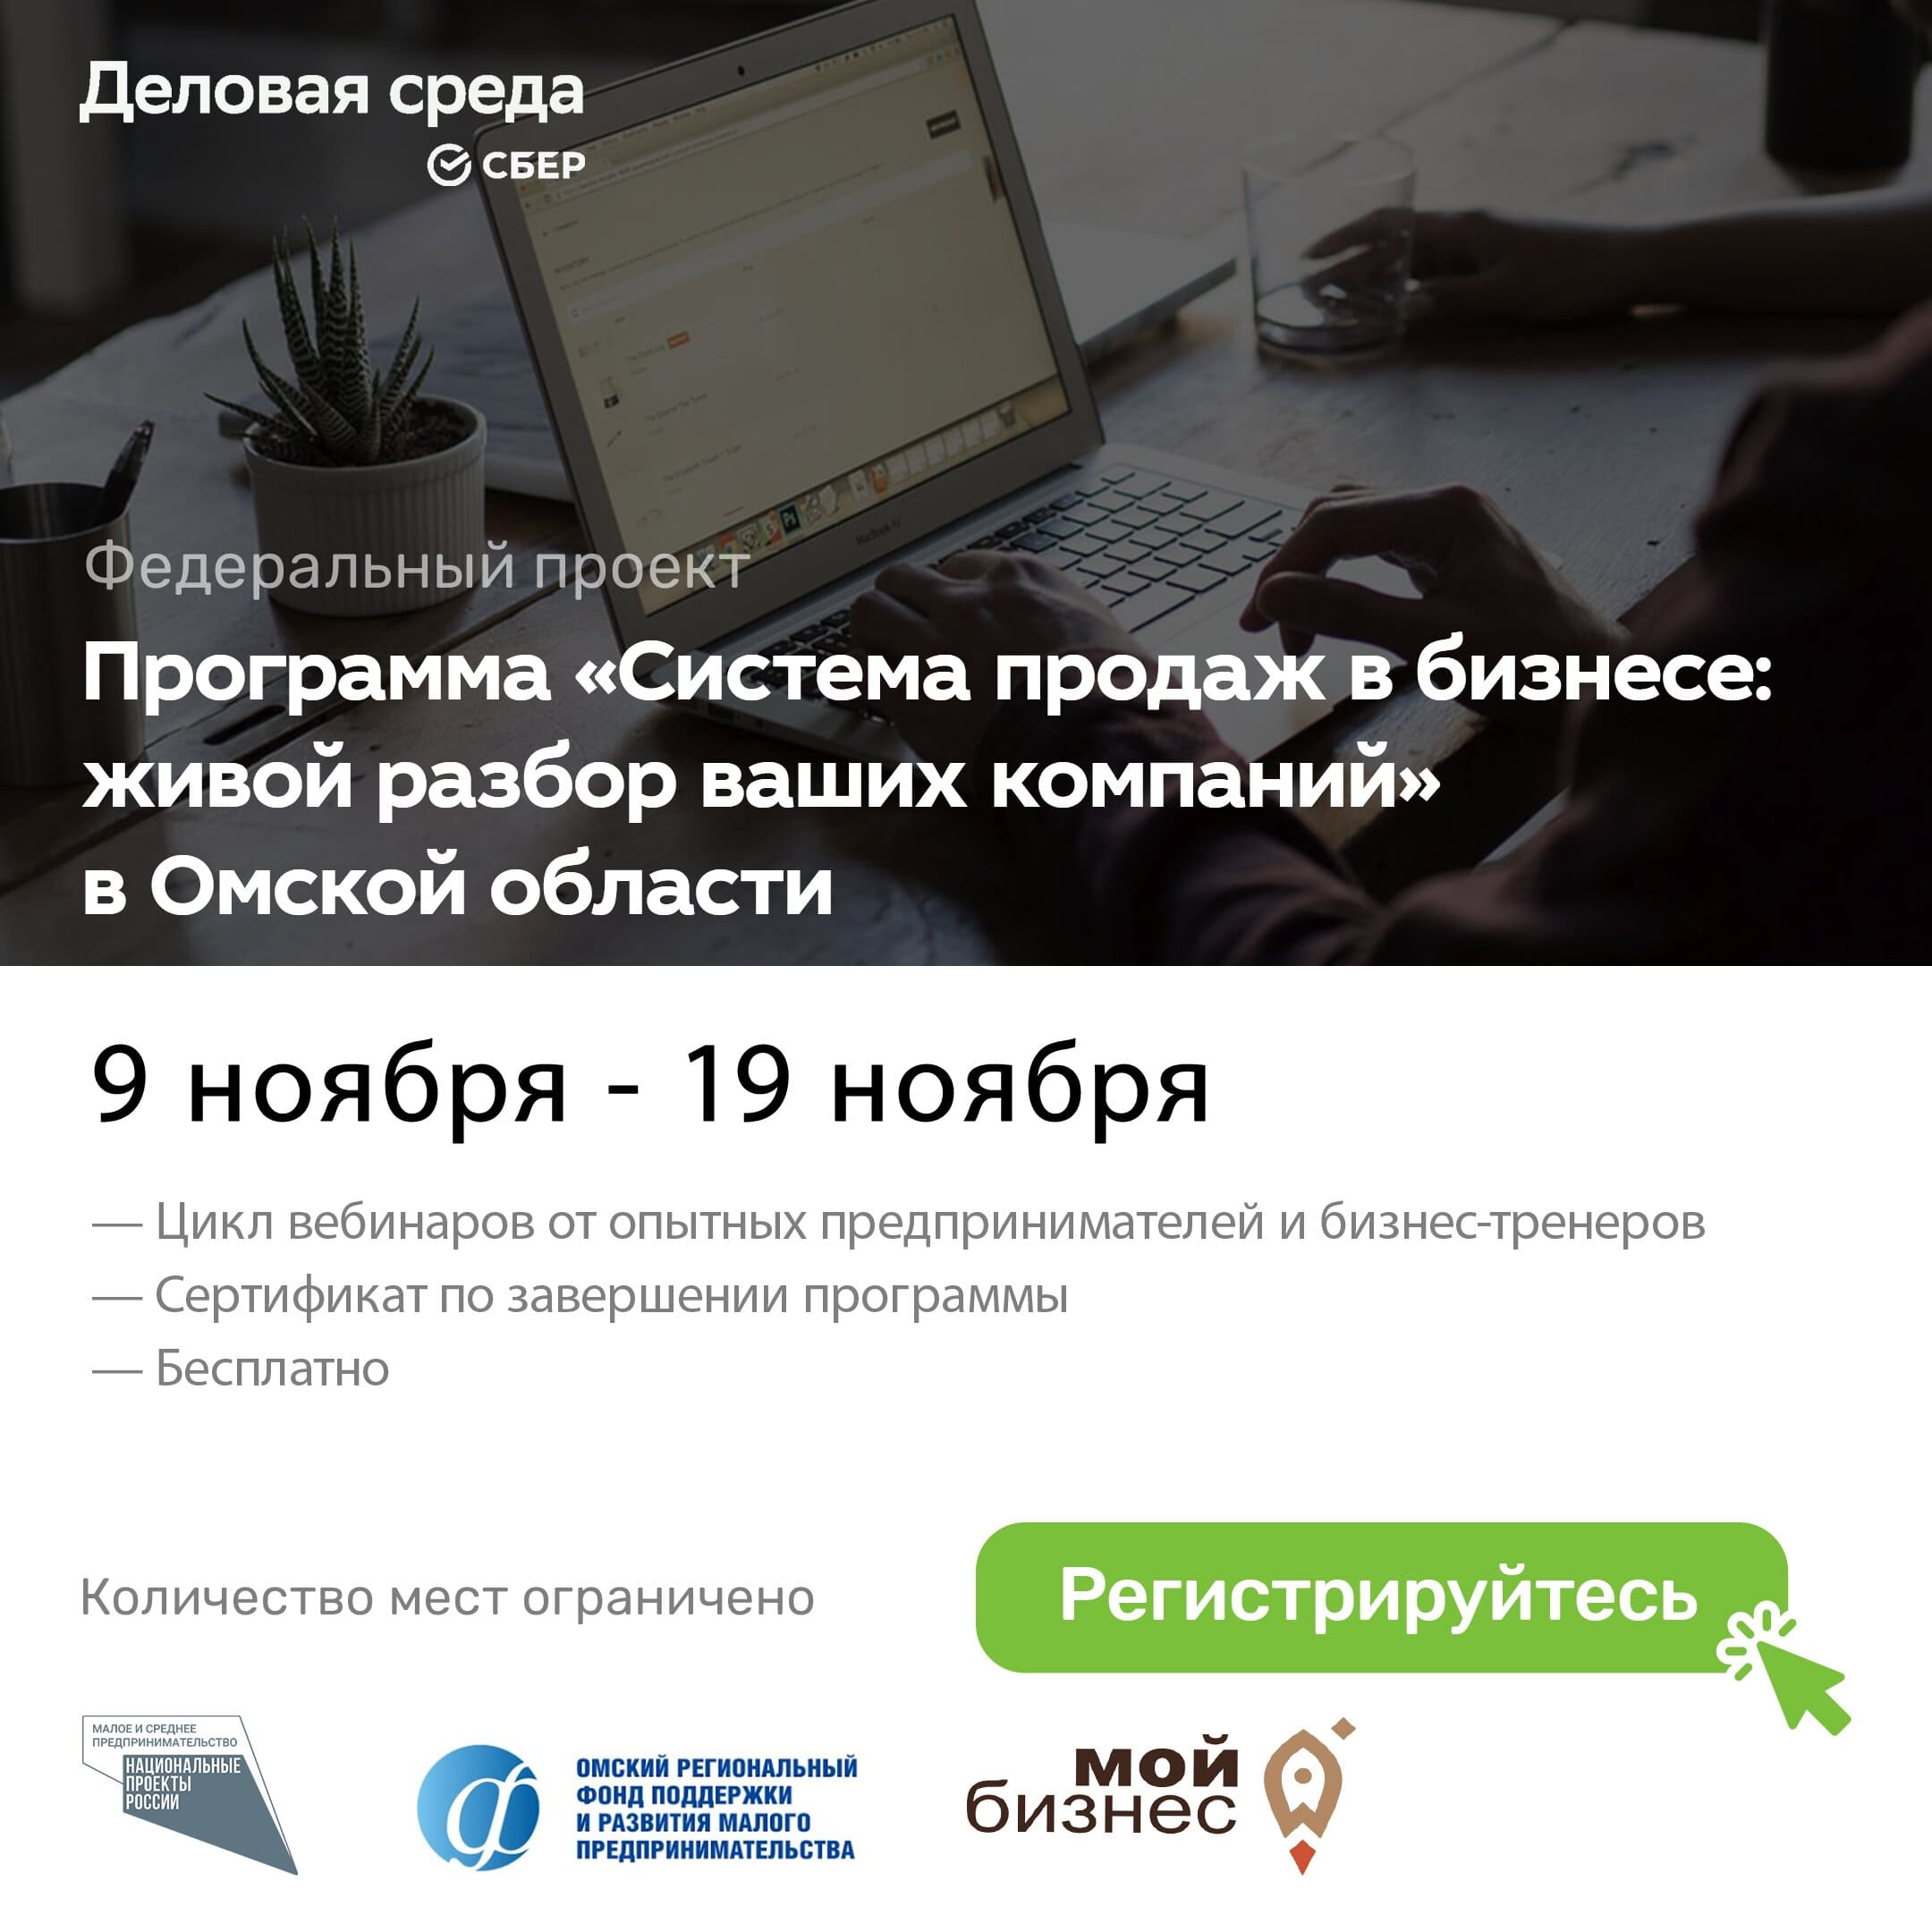 В Омске стартовала федеральная программа обучения для предпринимателей "Система продаж в бизнесе: живой разбор ваших компаний"